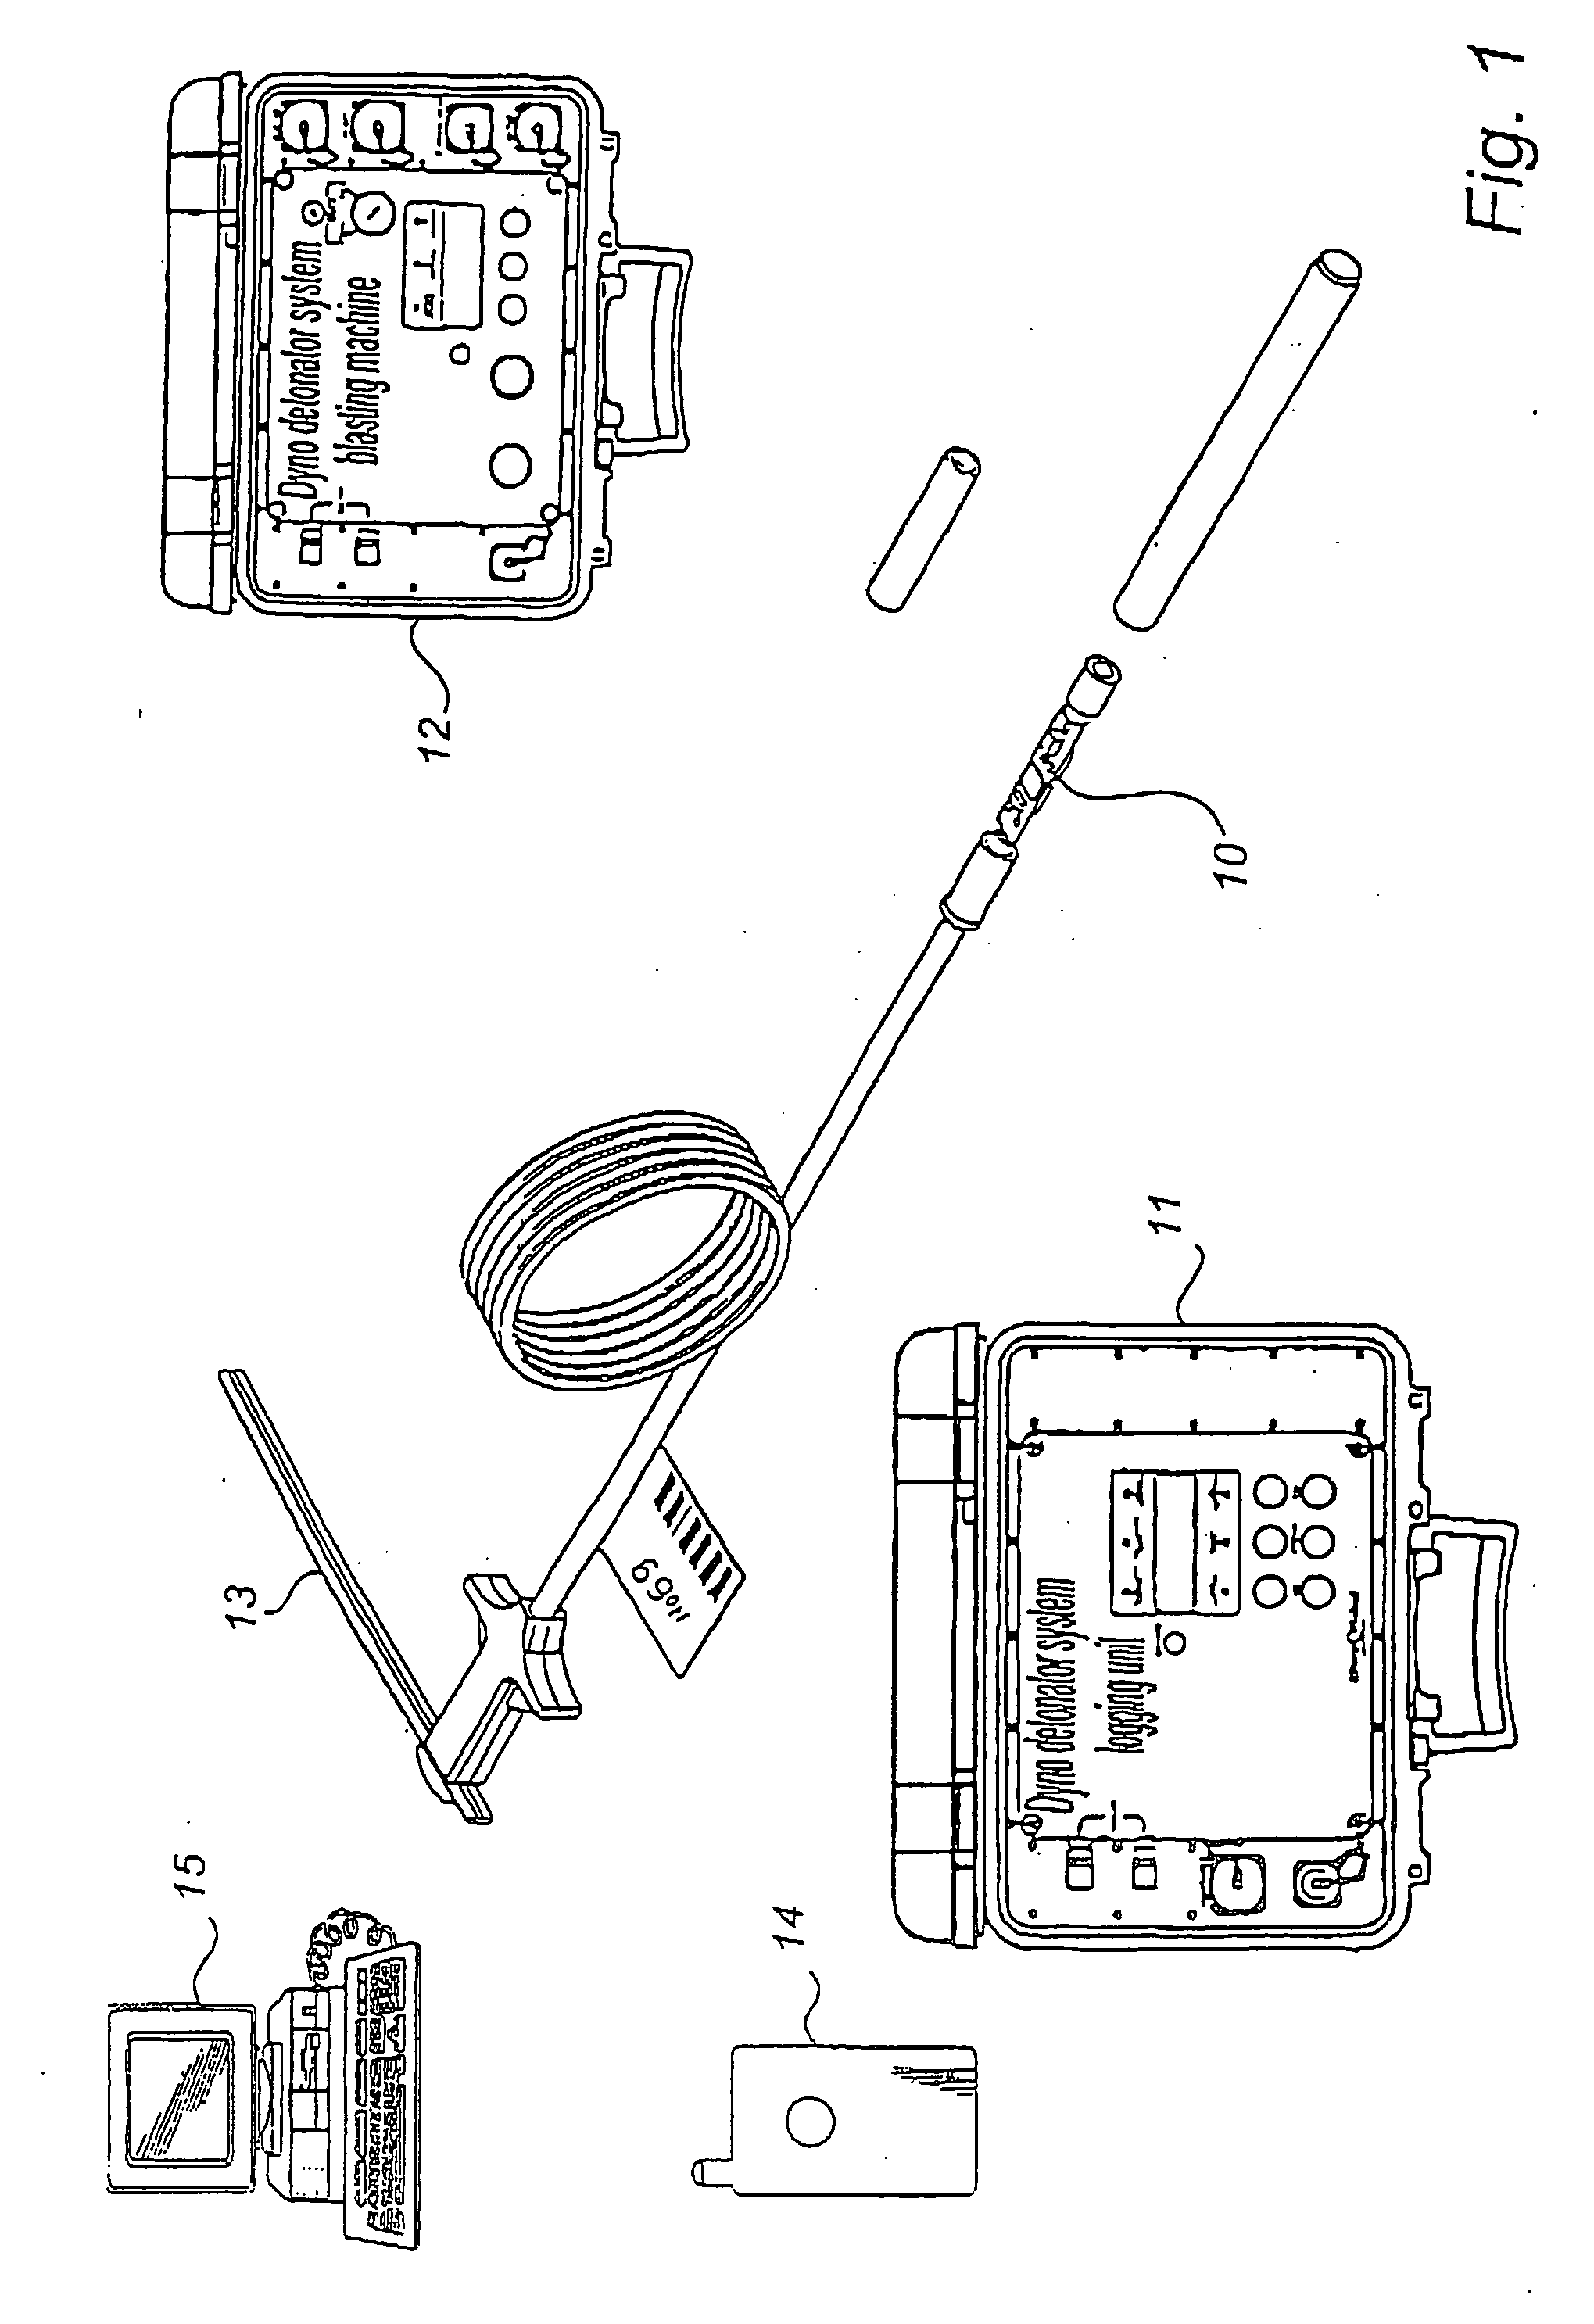 Flexible detonator system